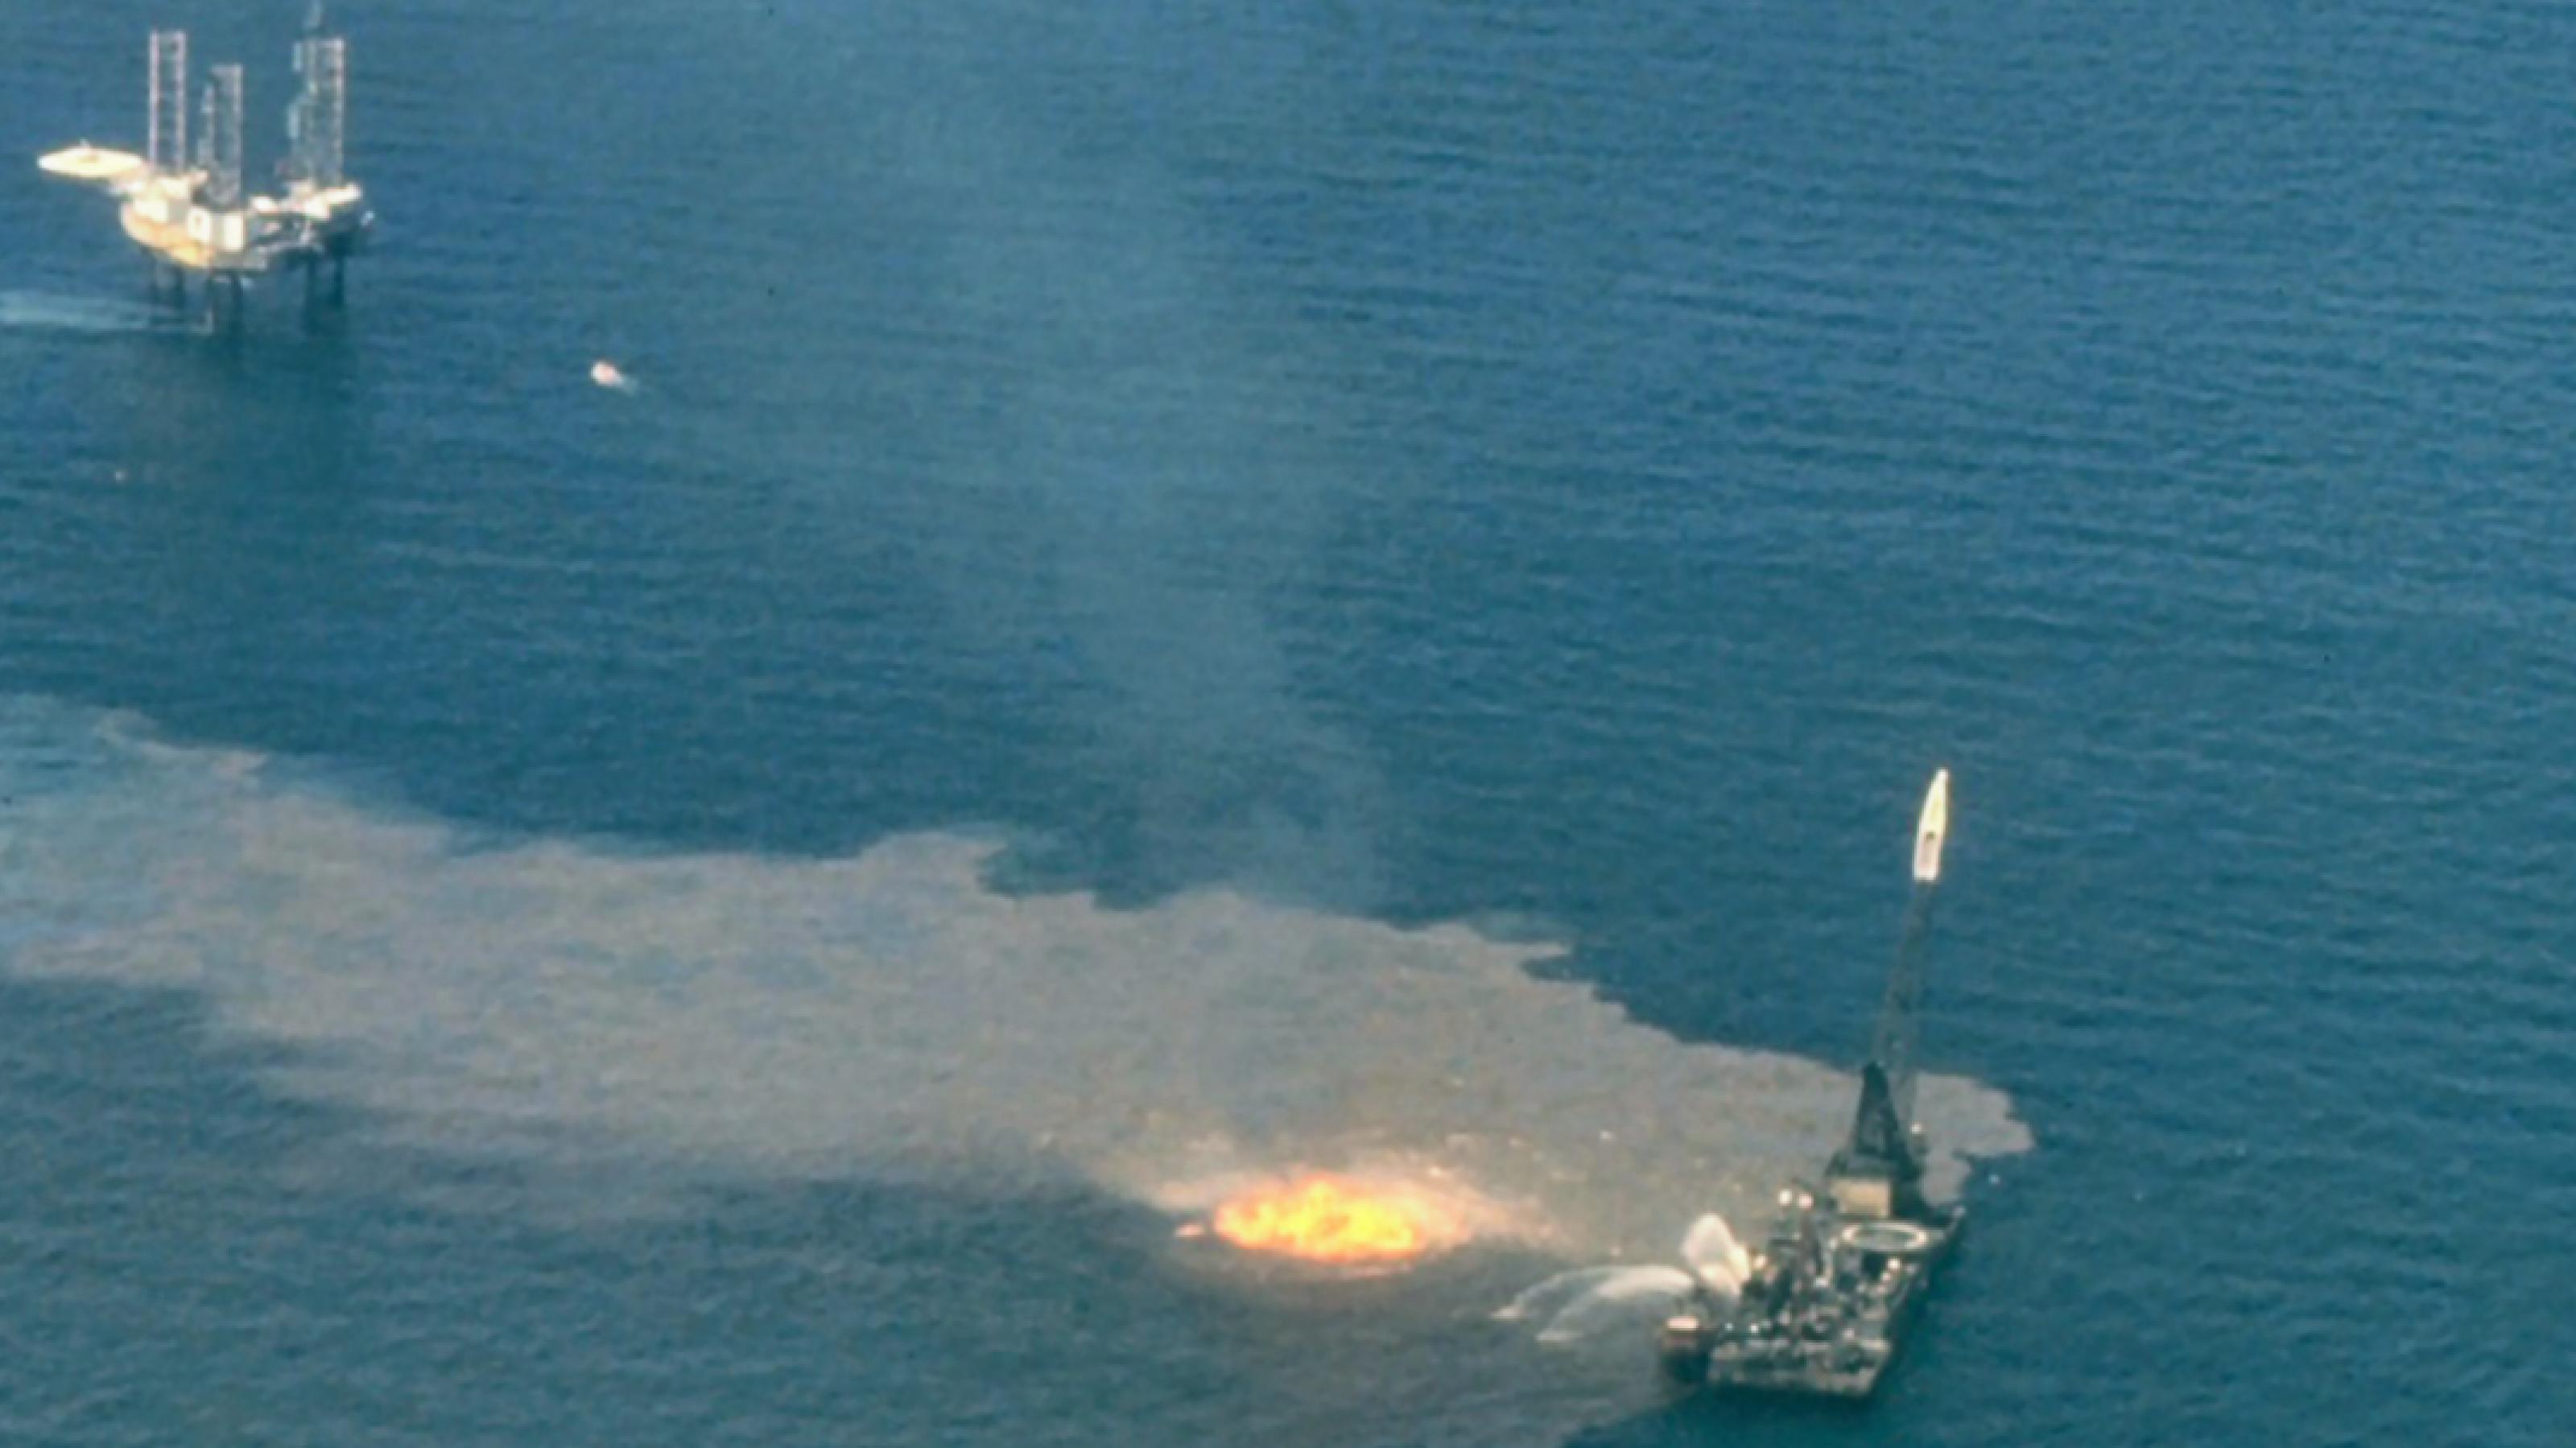 Luftbild von der Unglücksstelle Ixtoc 1, 1979: Öl verschmutzt das Meerwasser und ein Schiff richtet Wasserwerfer auf den Brand.